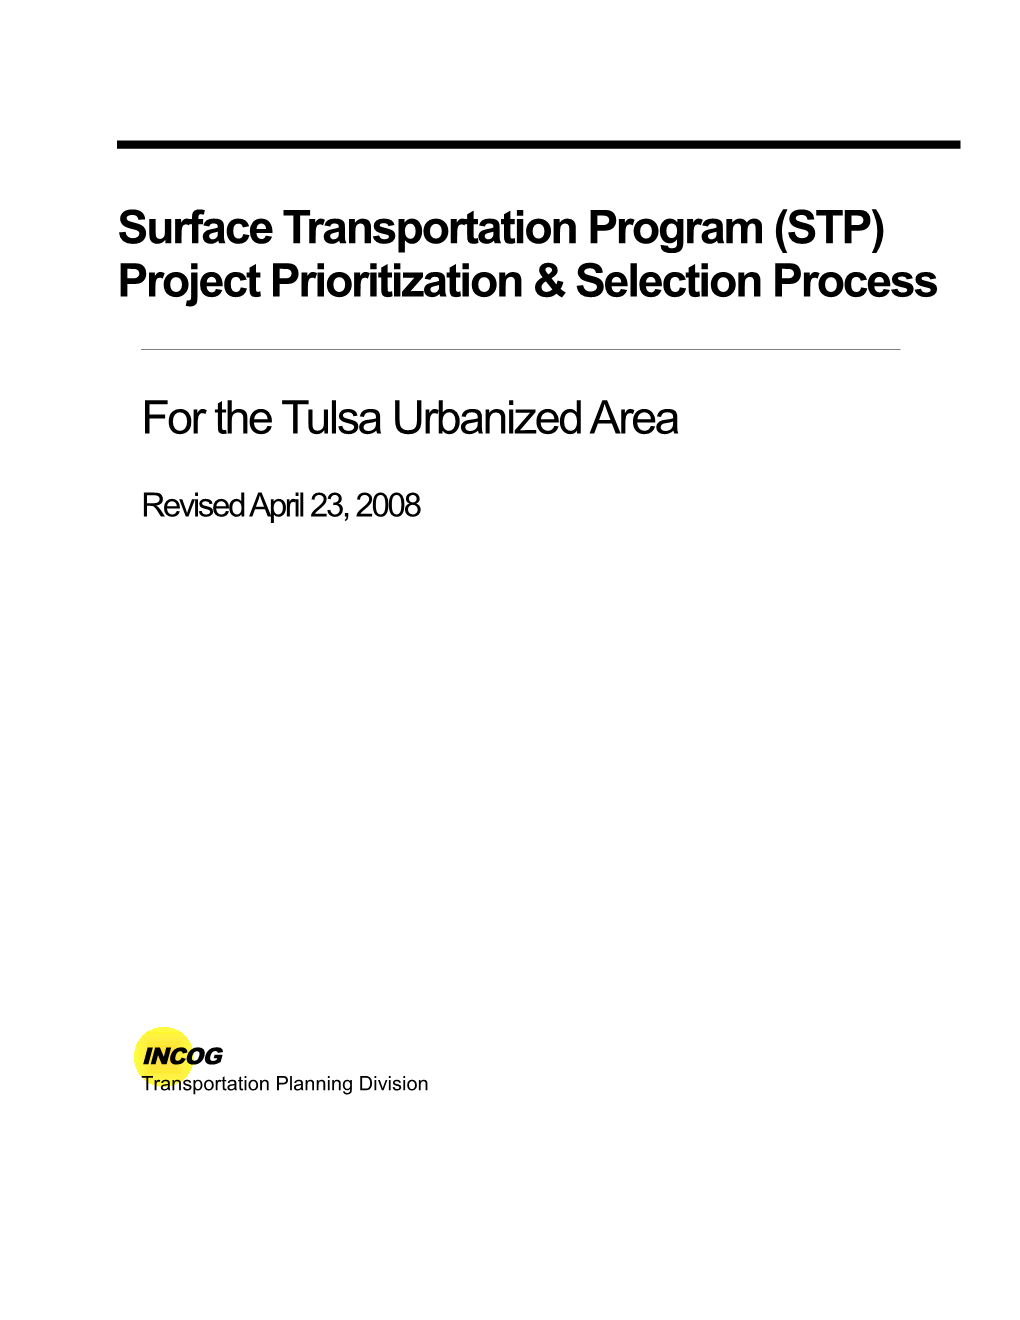 Surface Transportation Program (STP) Project Prioritization & Selection Process